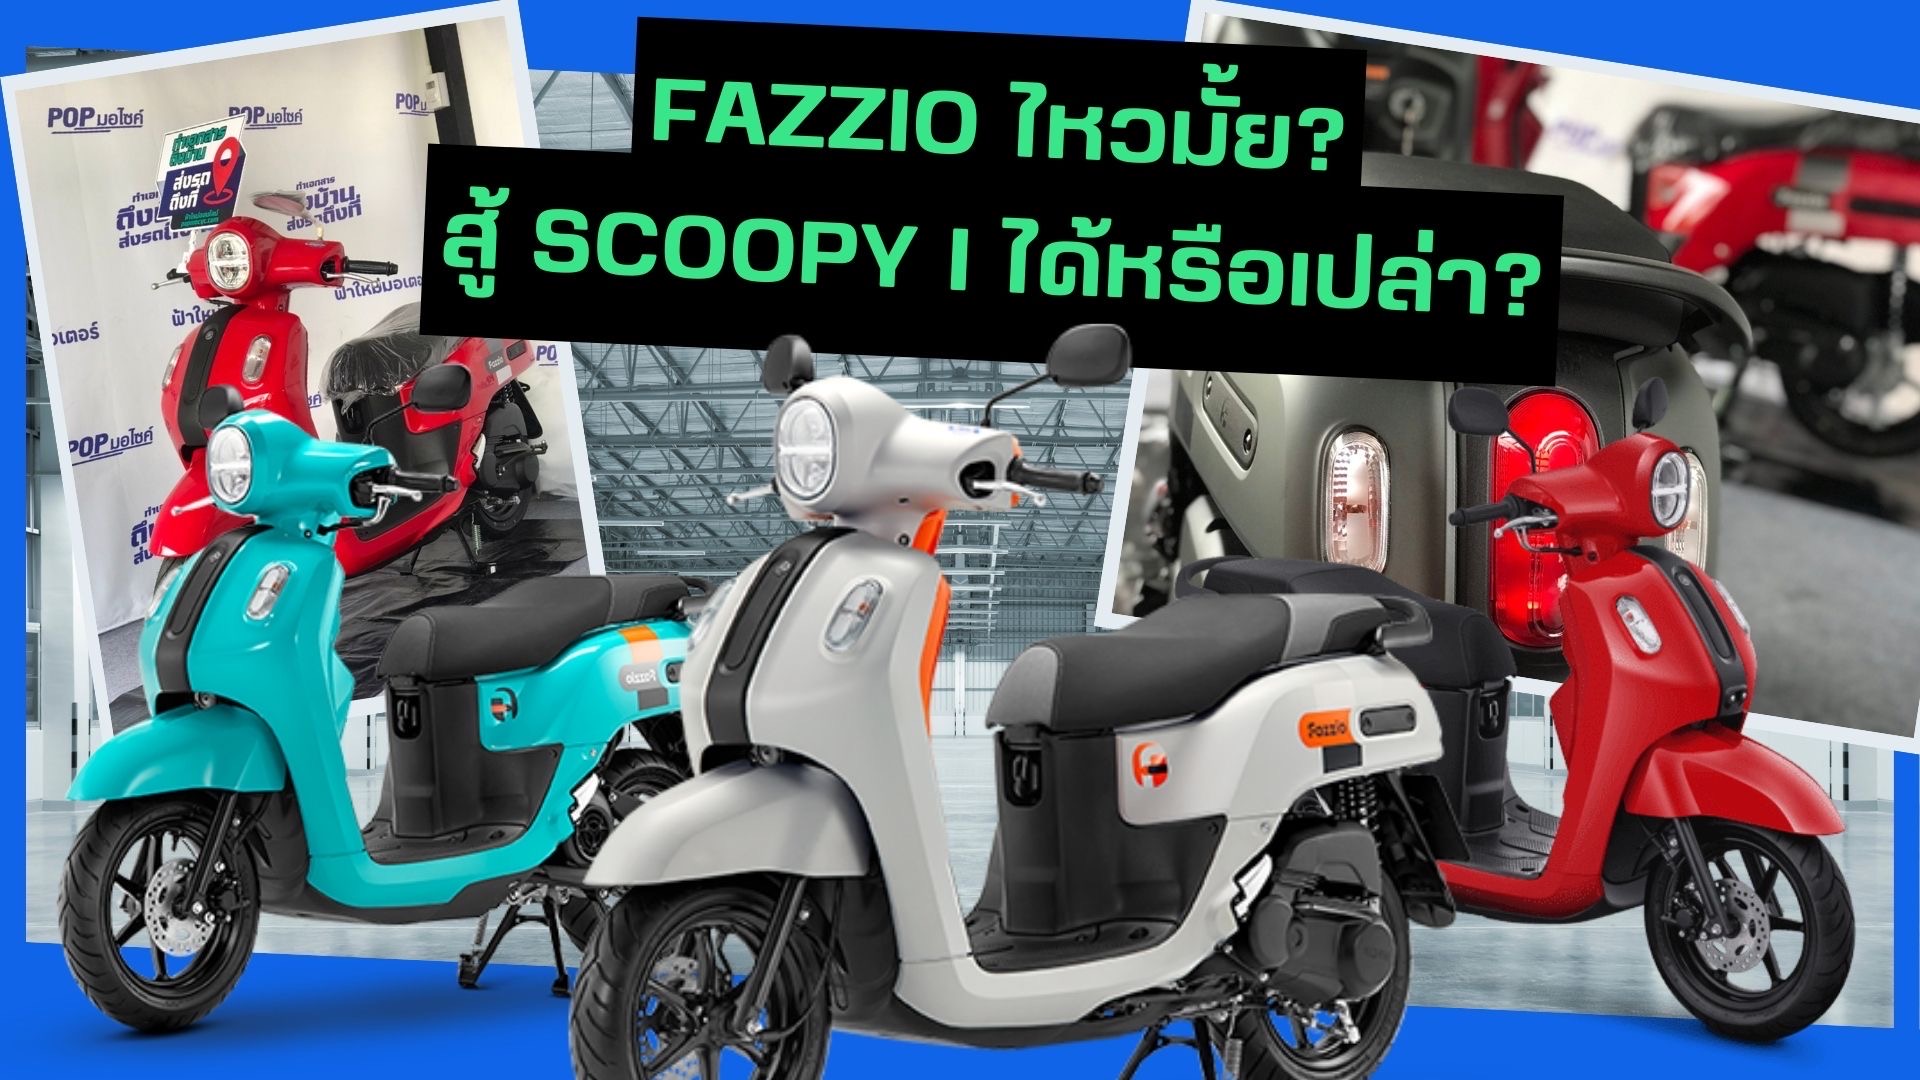 Yamaha Fazzio ไหวไหม? ชน Scoopy ได้หรือเปล่า? แฉทุกรายละเอียด